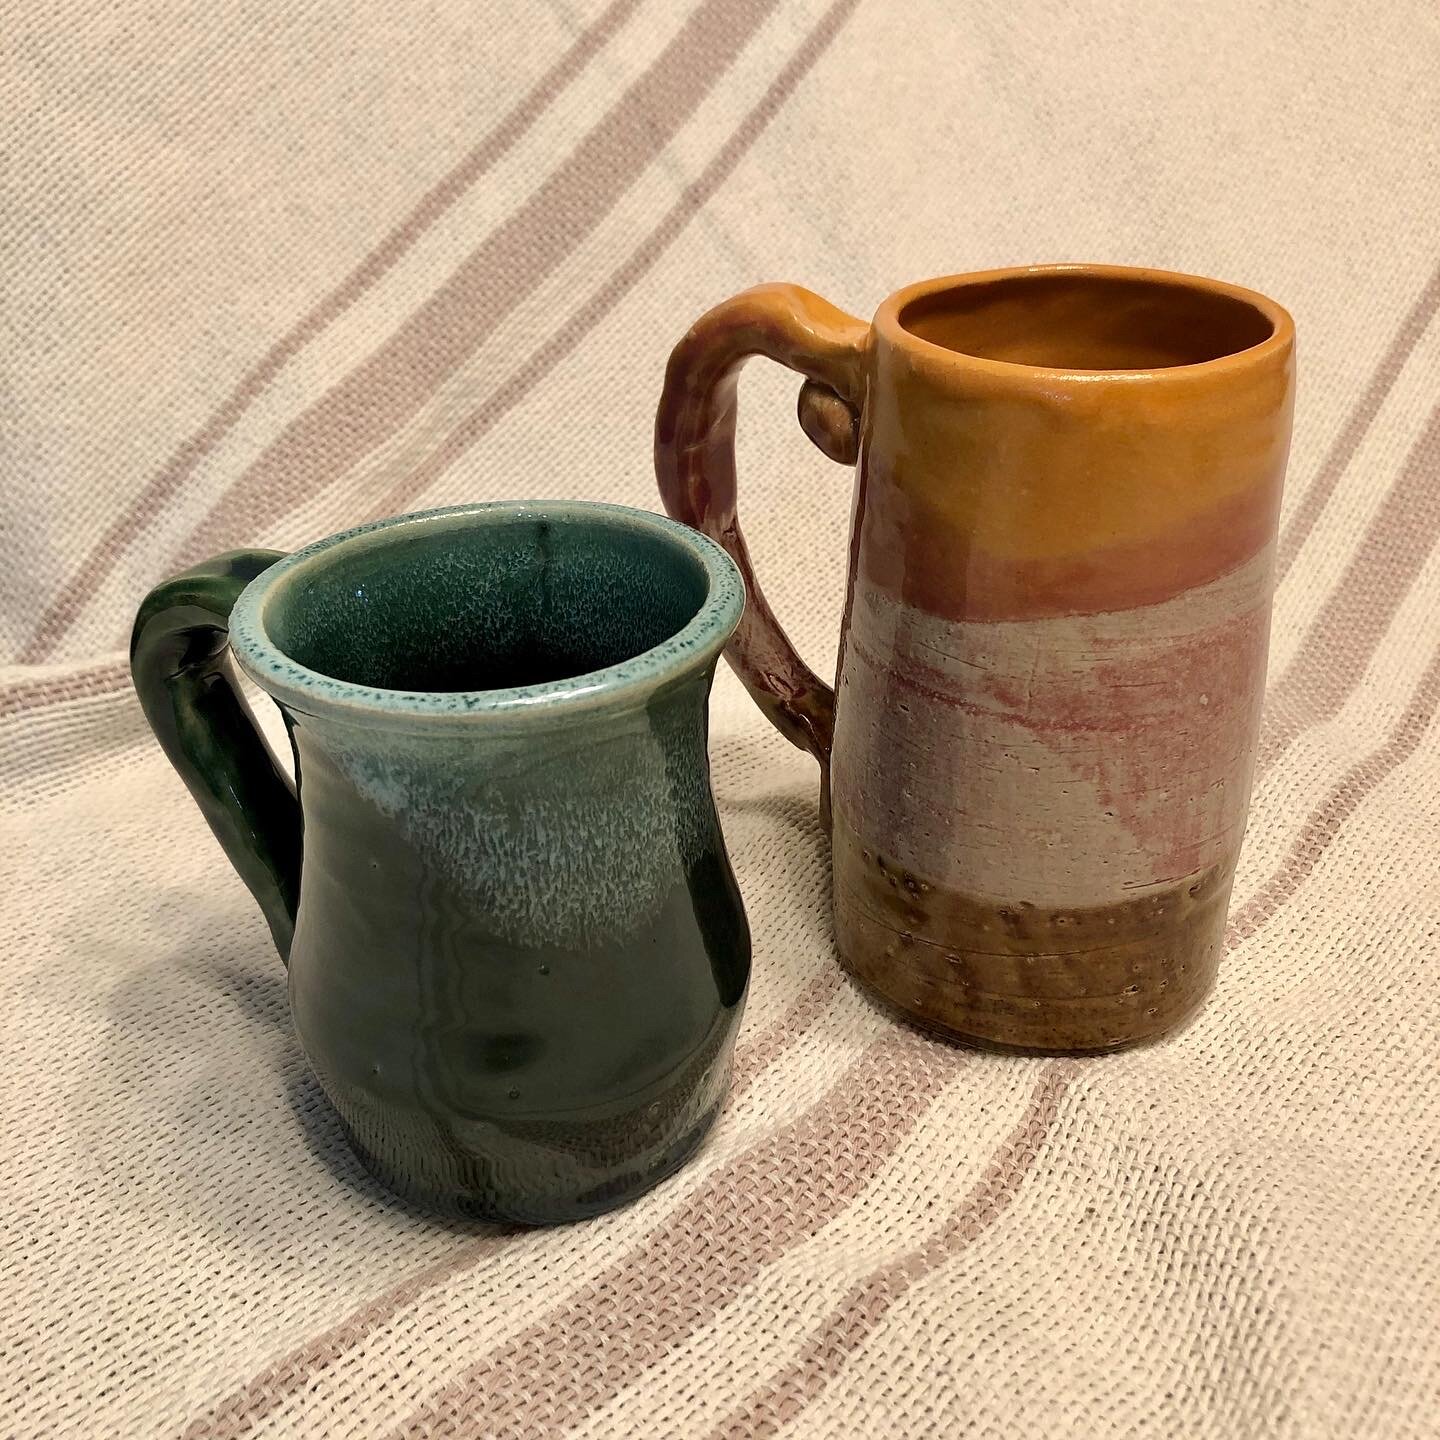 Finished mugs